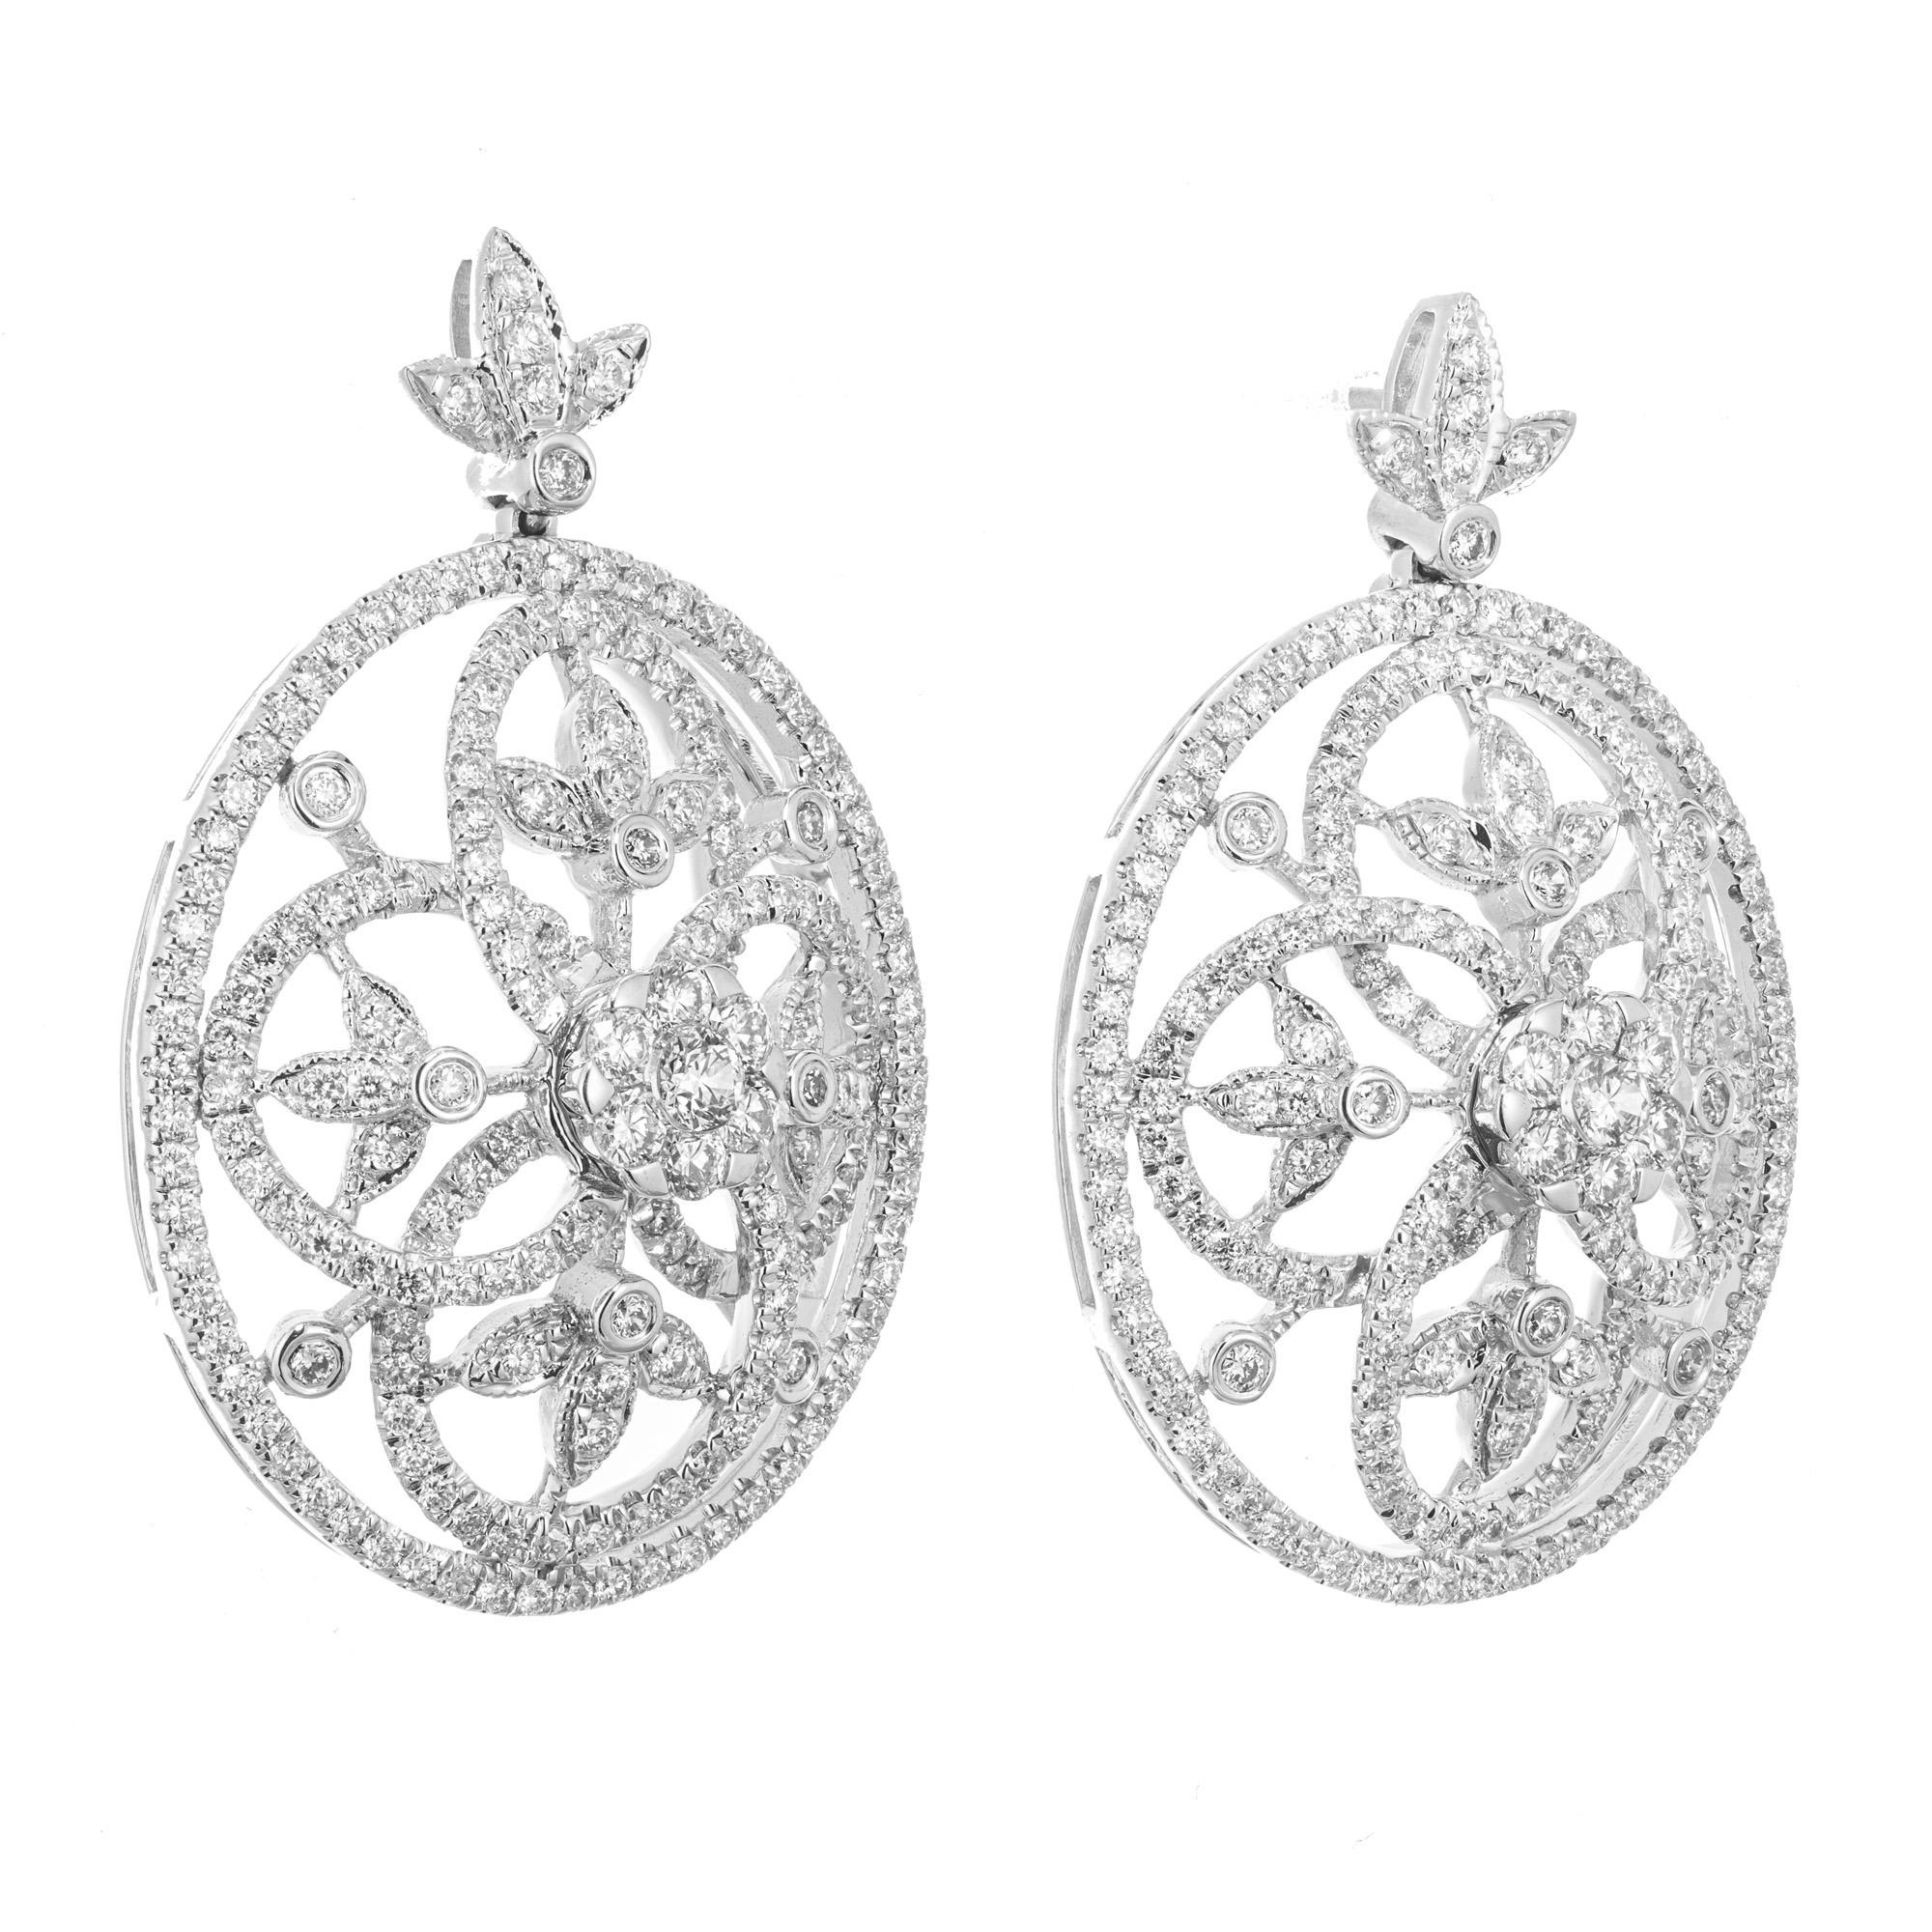 Boucles d'oreilles pendantes spectaculaires en diamant en forme de tourbillon ouvert. Montures de forme ovale en or blanc 14k à dôme surélevé, serties de 374 diamants ronds de taille brillant totalisant 1,75 ct. Chaque pendentif est orné de